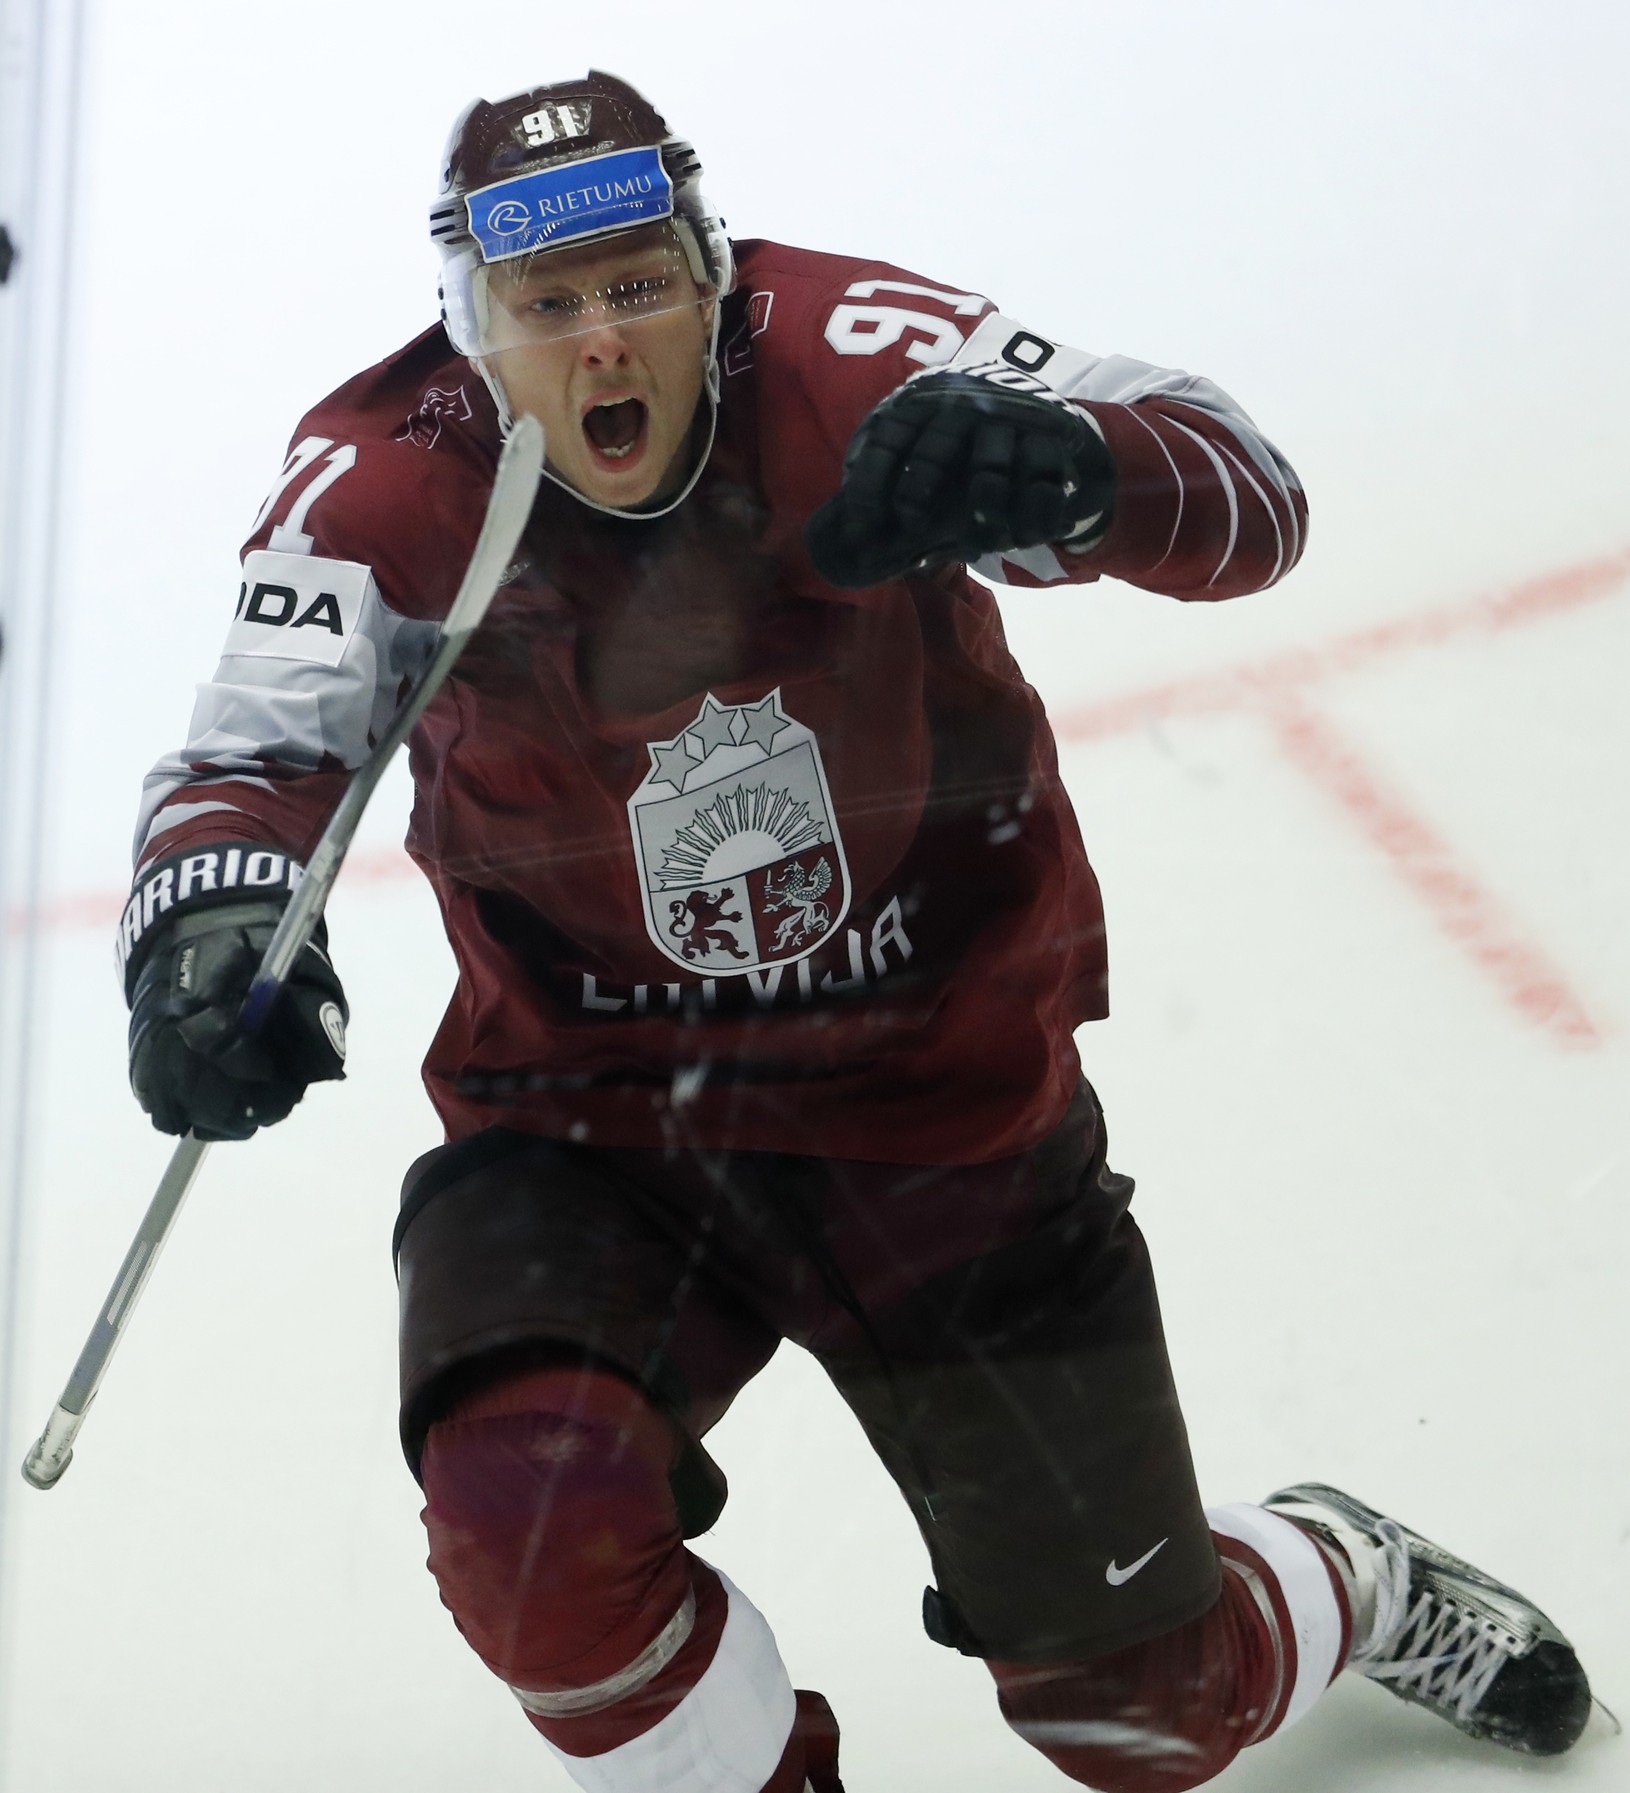 Lotyšský hokejista Ronalds Kenins